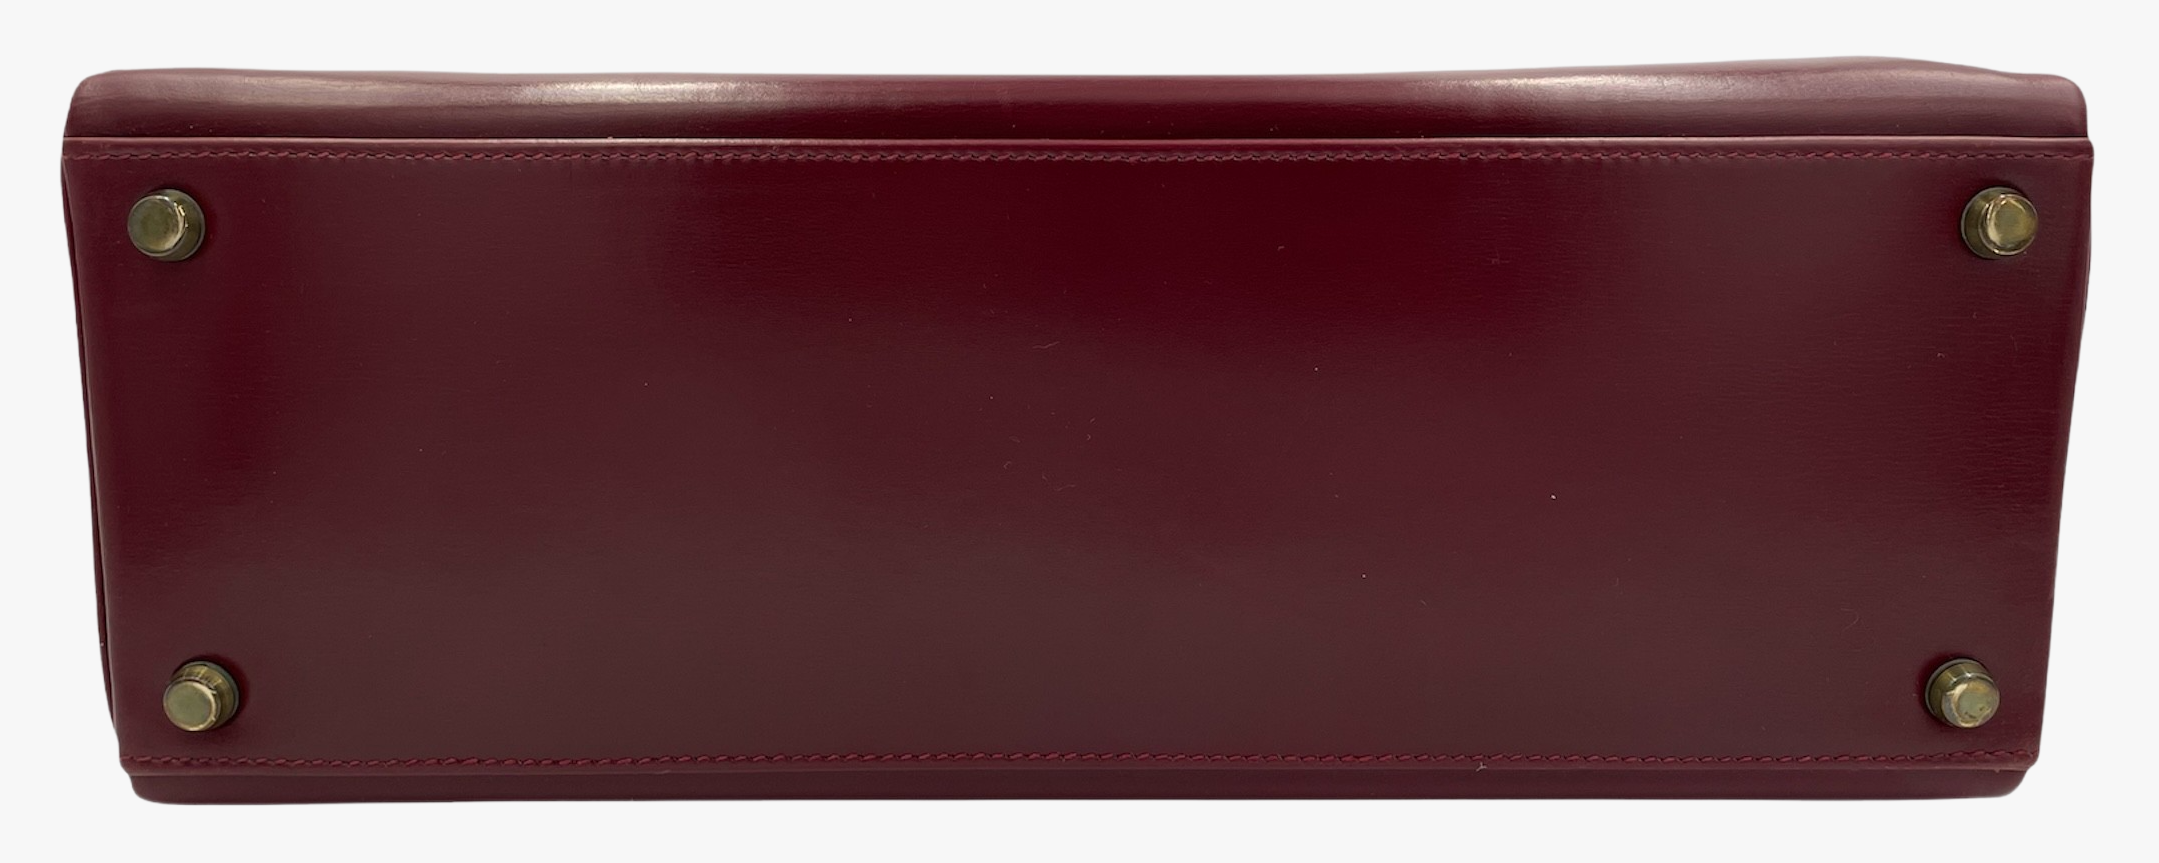 Vintage Hermes Kelly Bag In Burgundy Box Leather, 1976-2